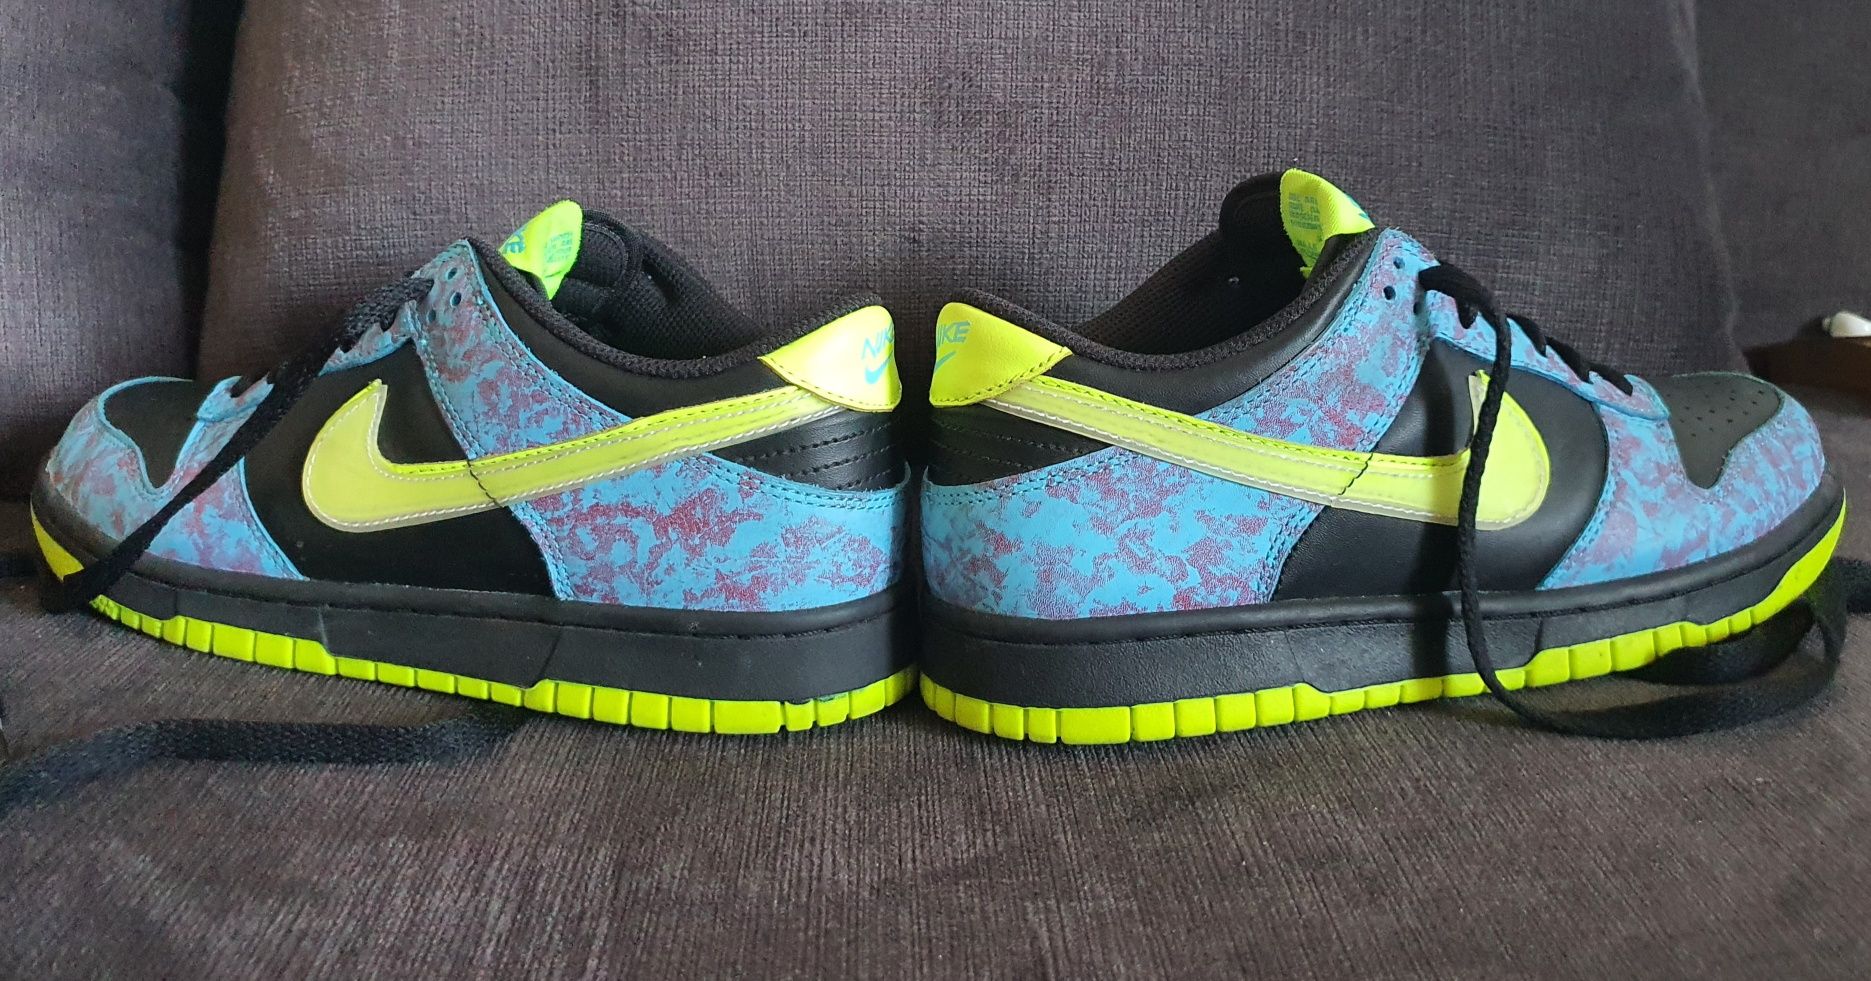 Pantofi Nike Dunk low 2, Acid Wash, copii